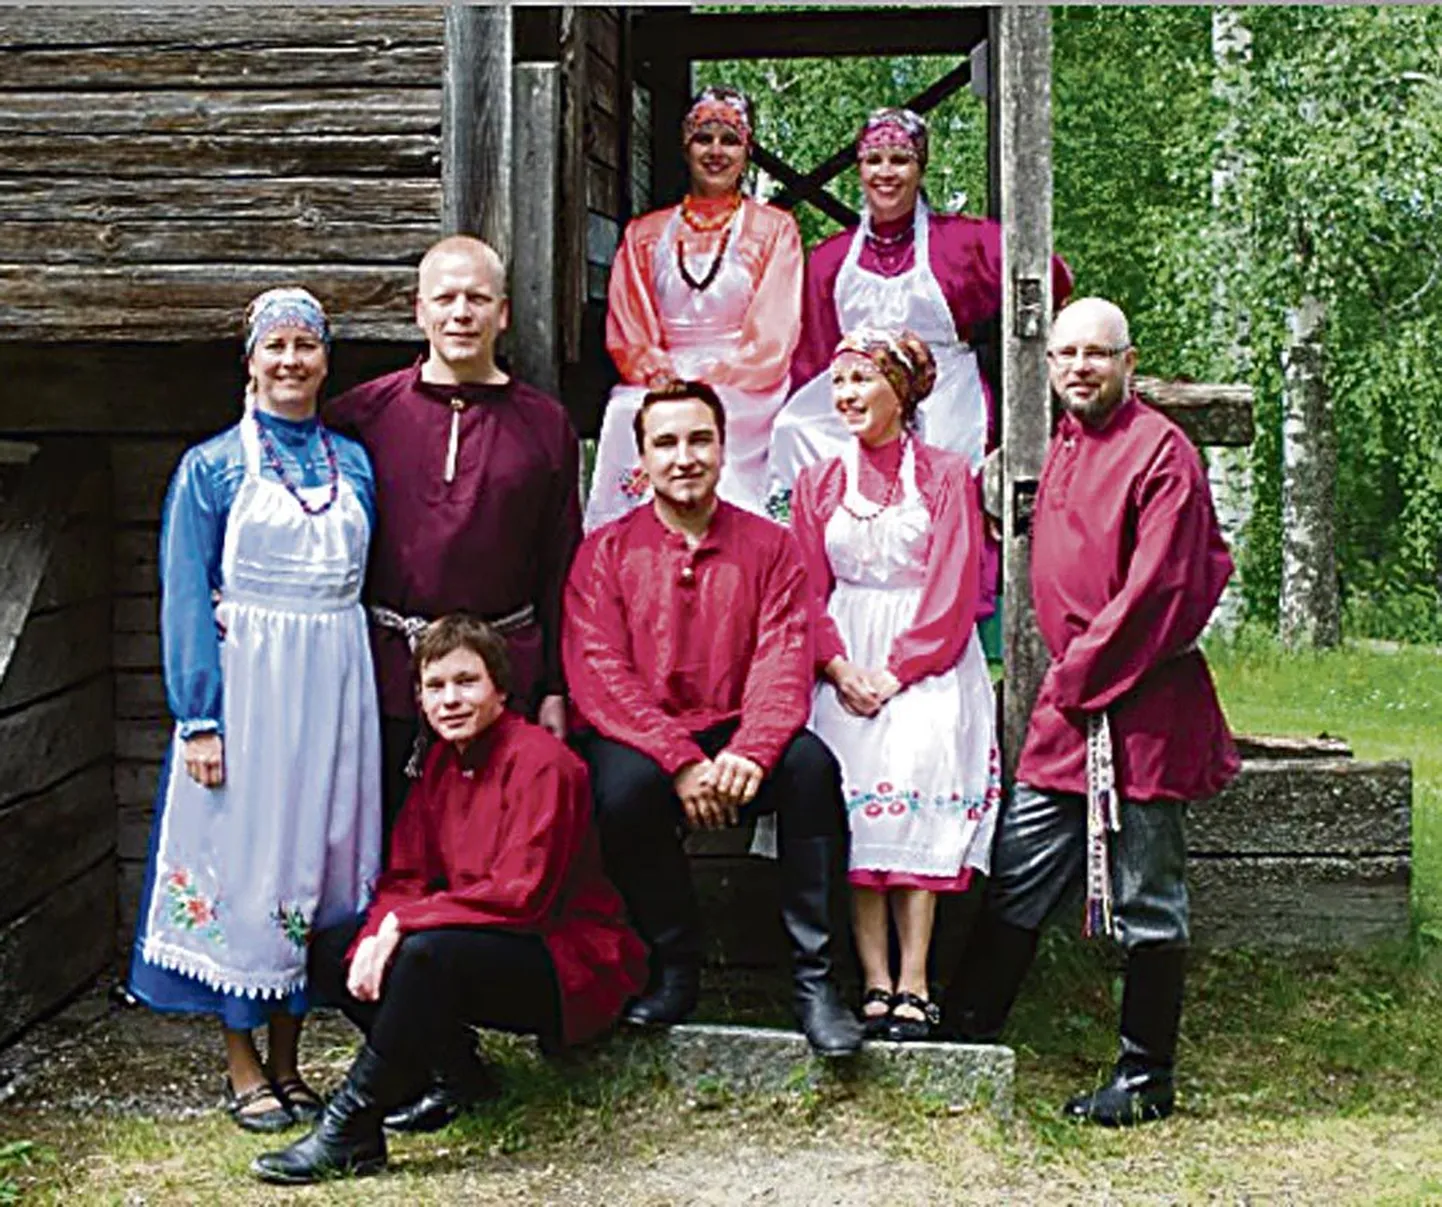 Soome tantsurühm Kikari tantsib nii soome, karjala kui udmurdi pärimustantse.